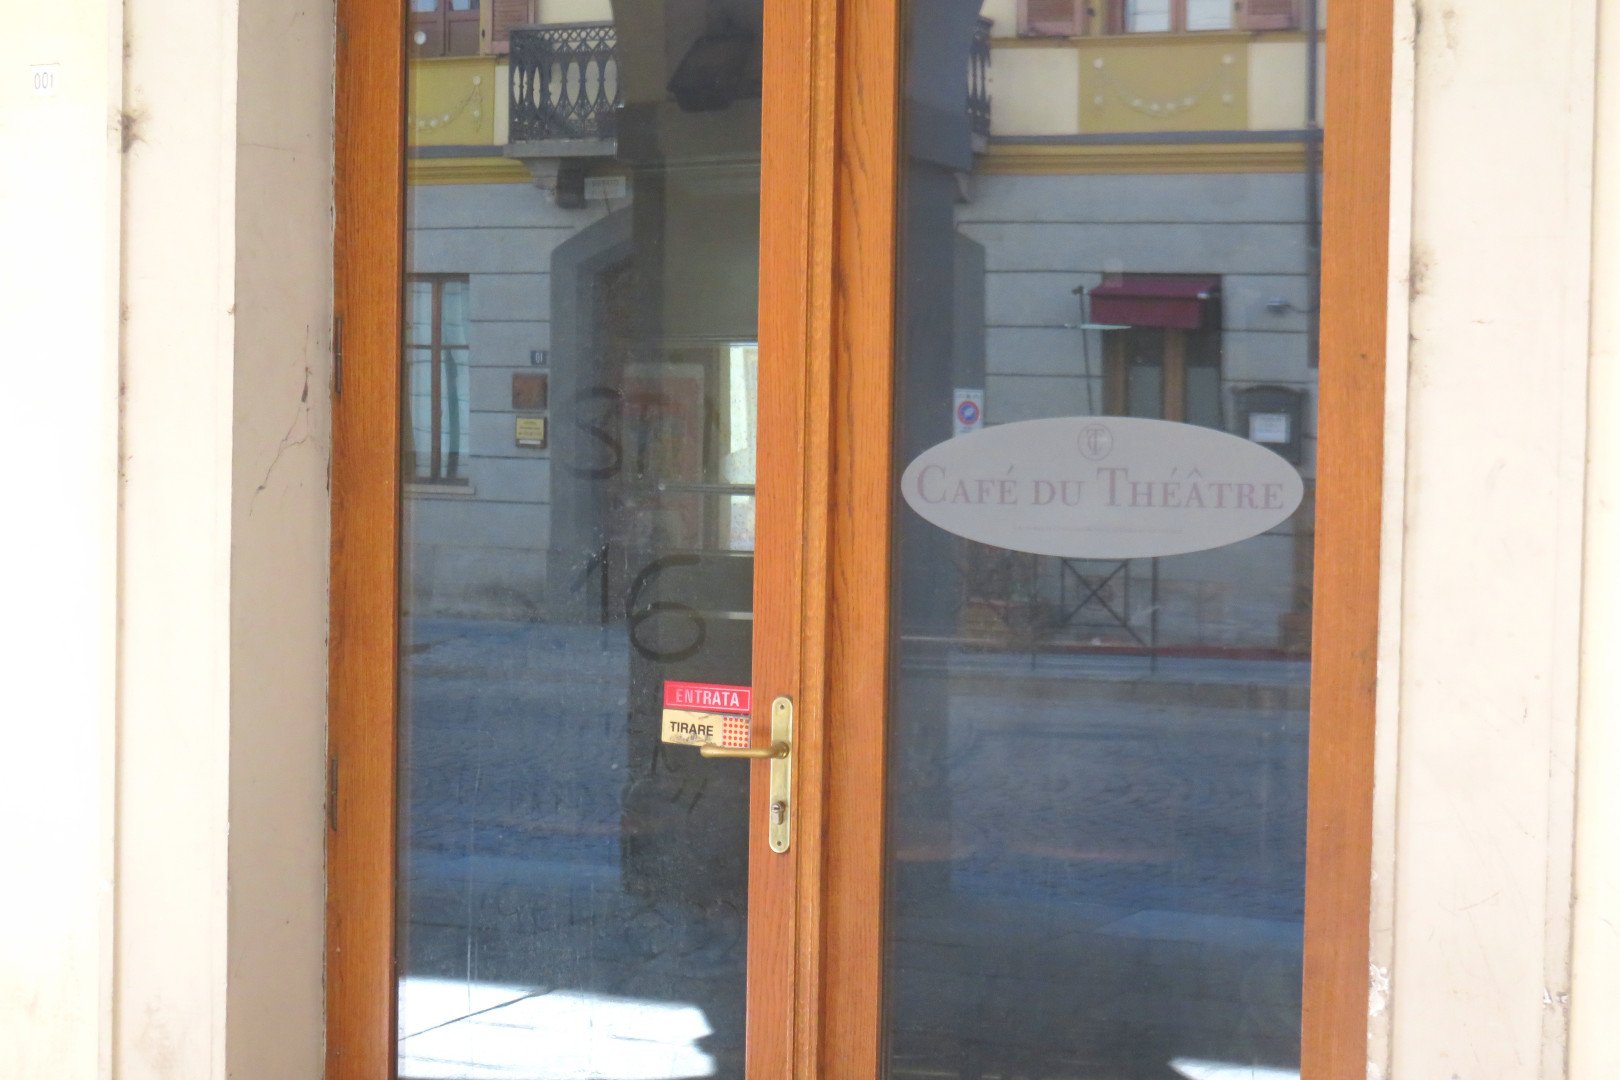 Il teatro “Giacosa” ed il “Cafè du Théâtre” di Aosta tornano, da settembre, ai precedenti gestori in attesa della nuova gara di concessione delle due strutture